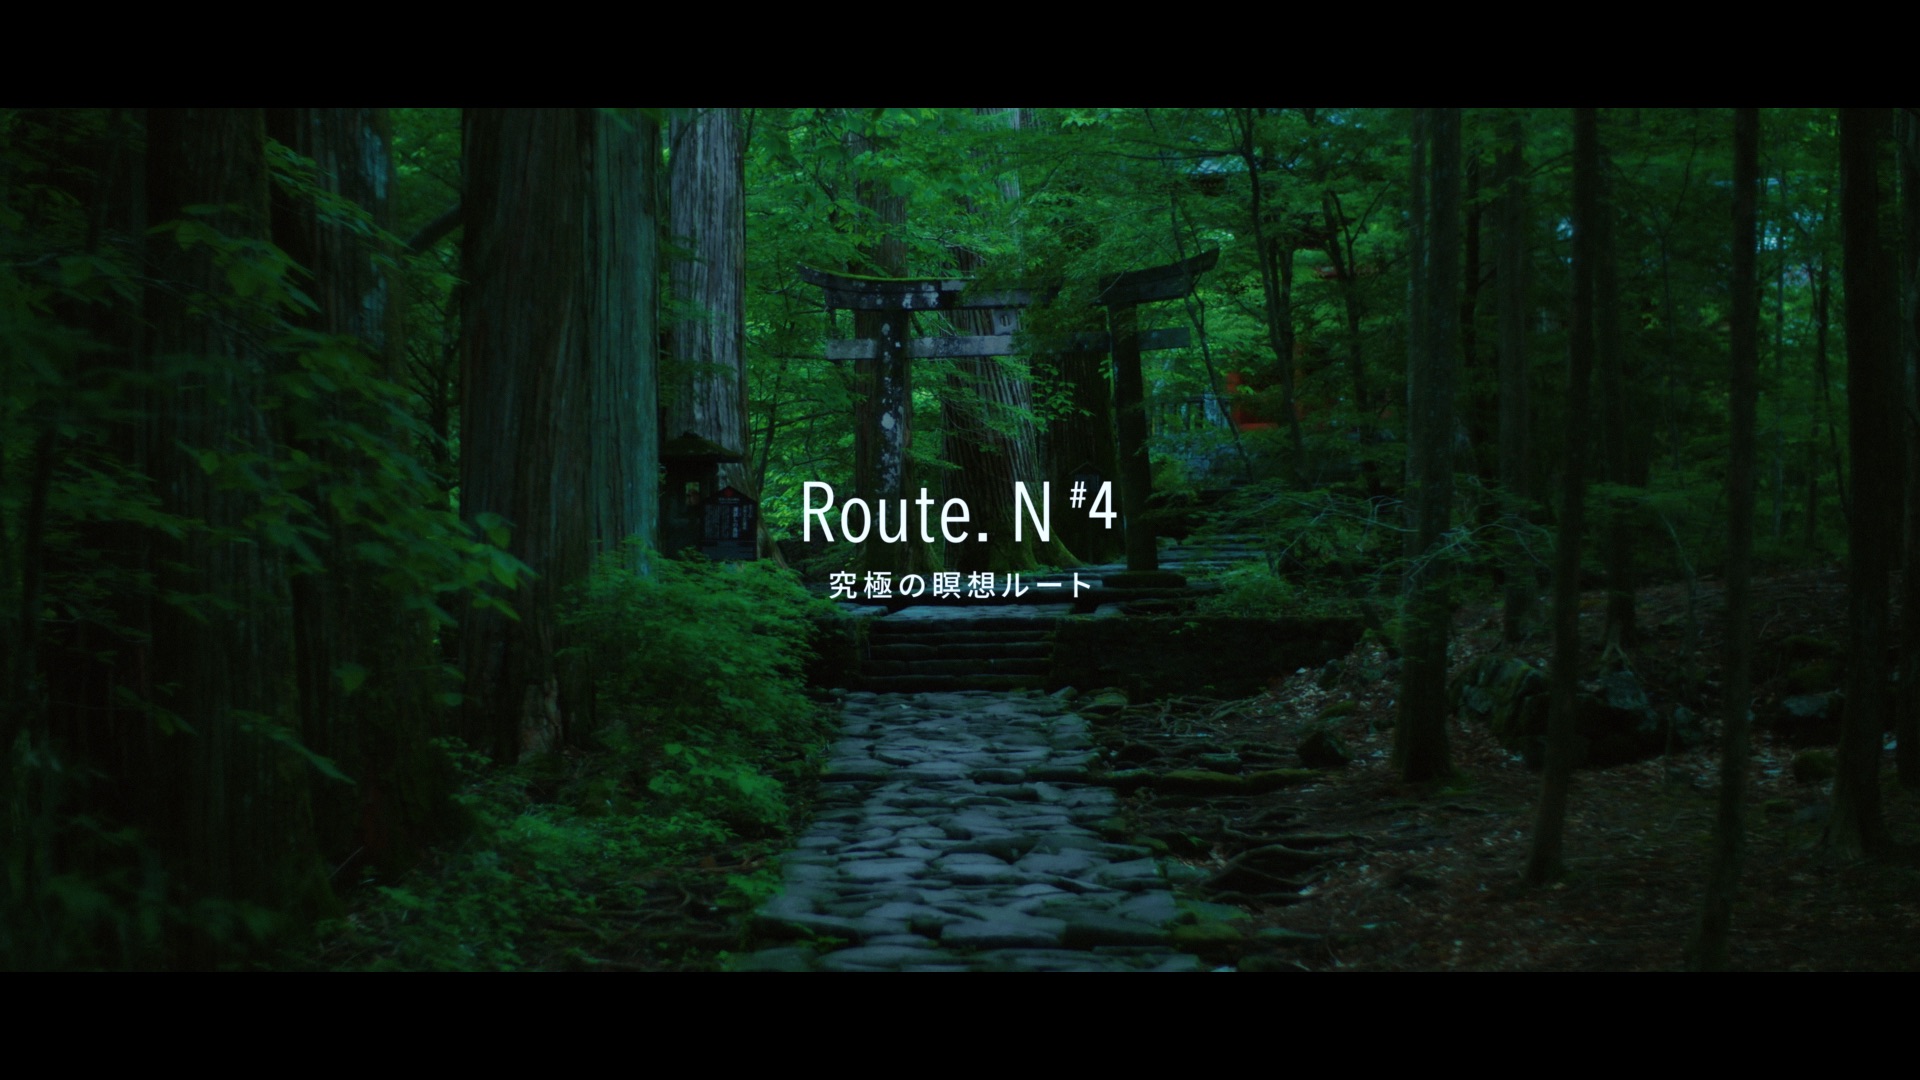 日光市 PR 動画 Route.N #4 究極の瞑想ルート篇 プロデューサー 山下太平 企画 制作 THE OCTOPUS